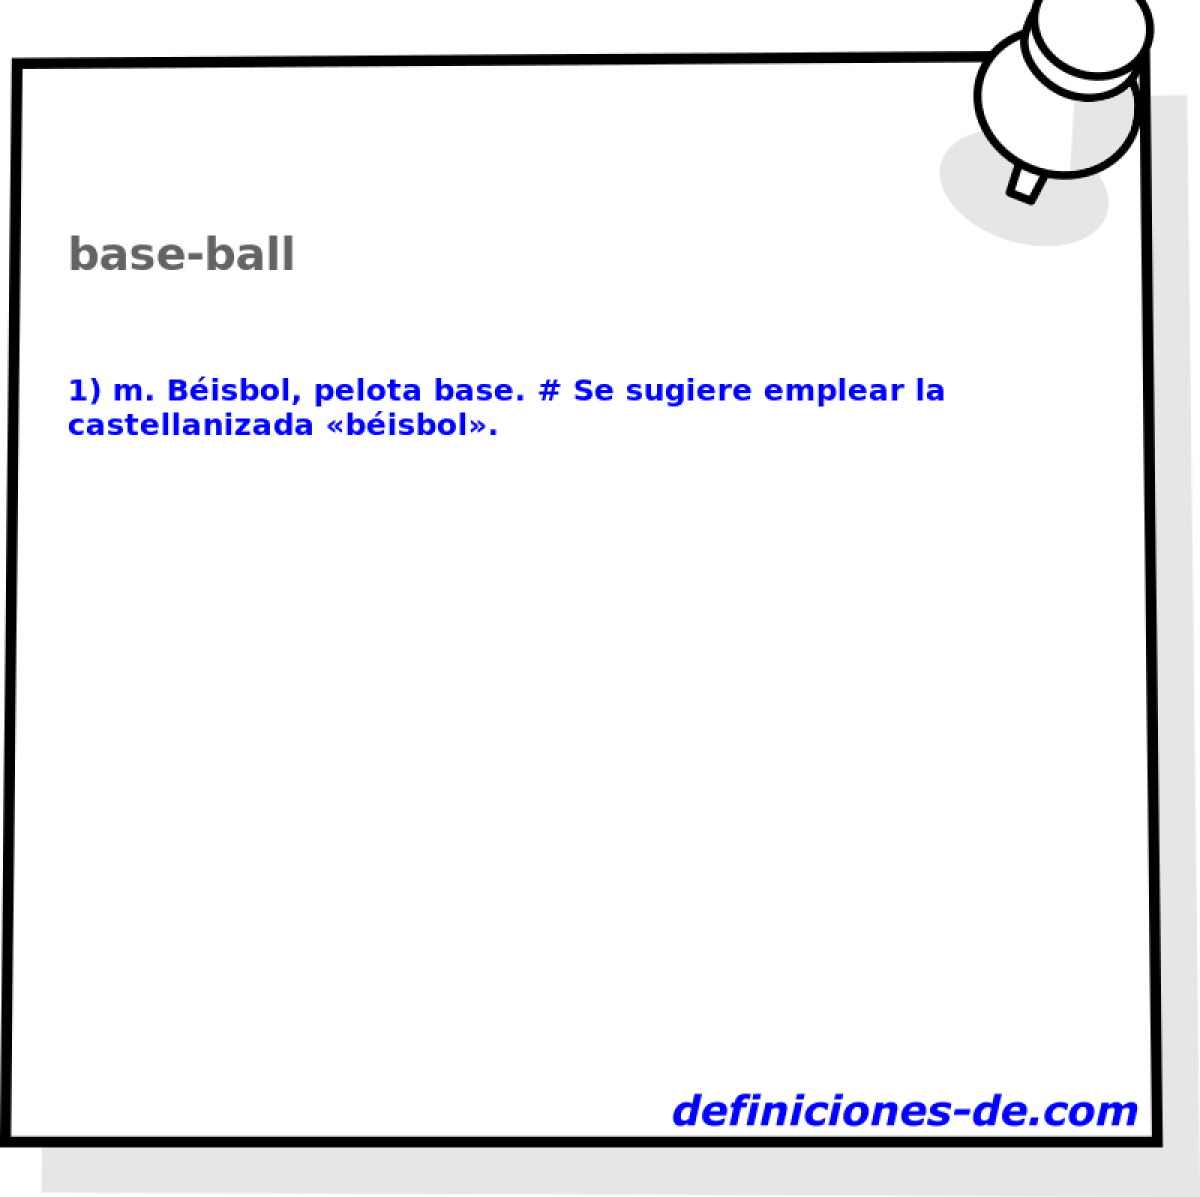 base-ball 